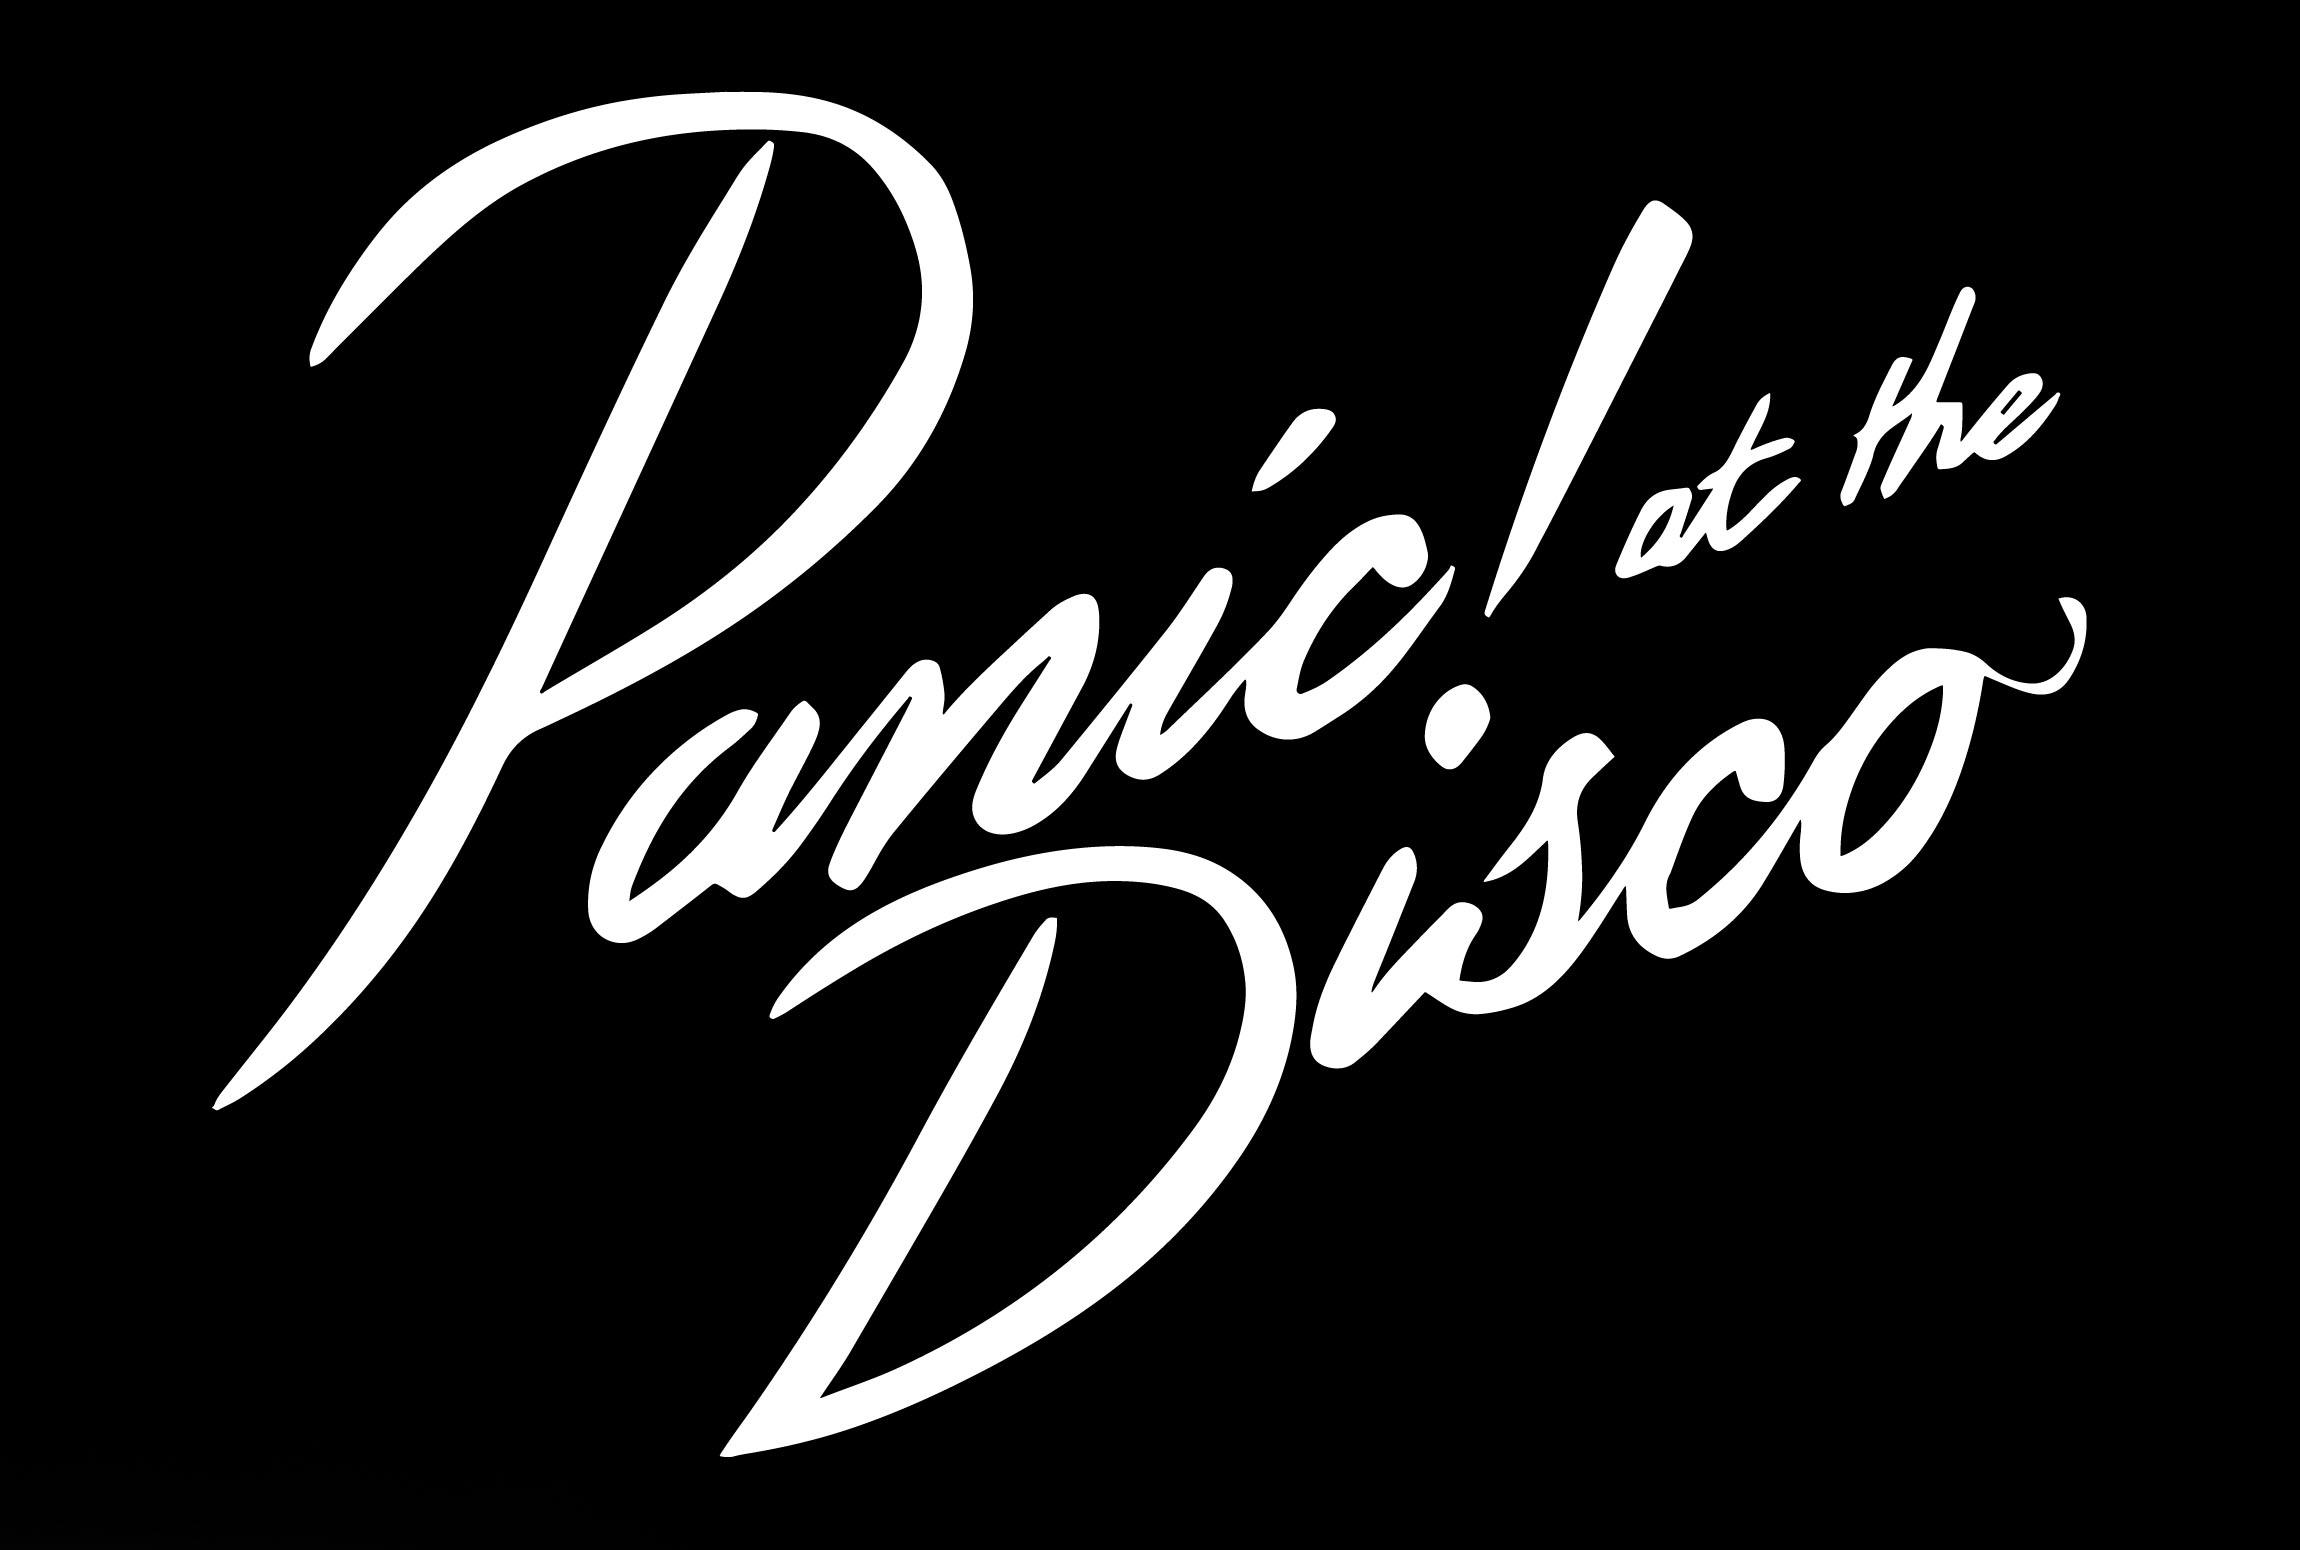 Panic at the disco Logos